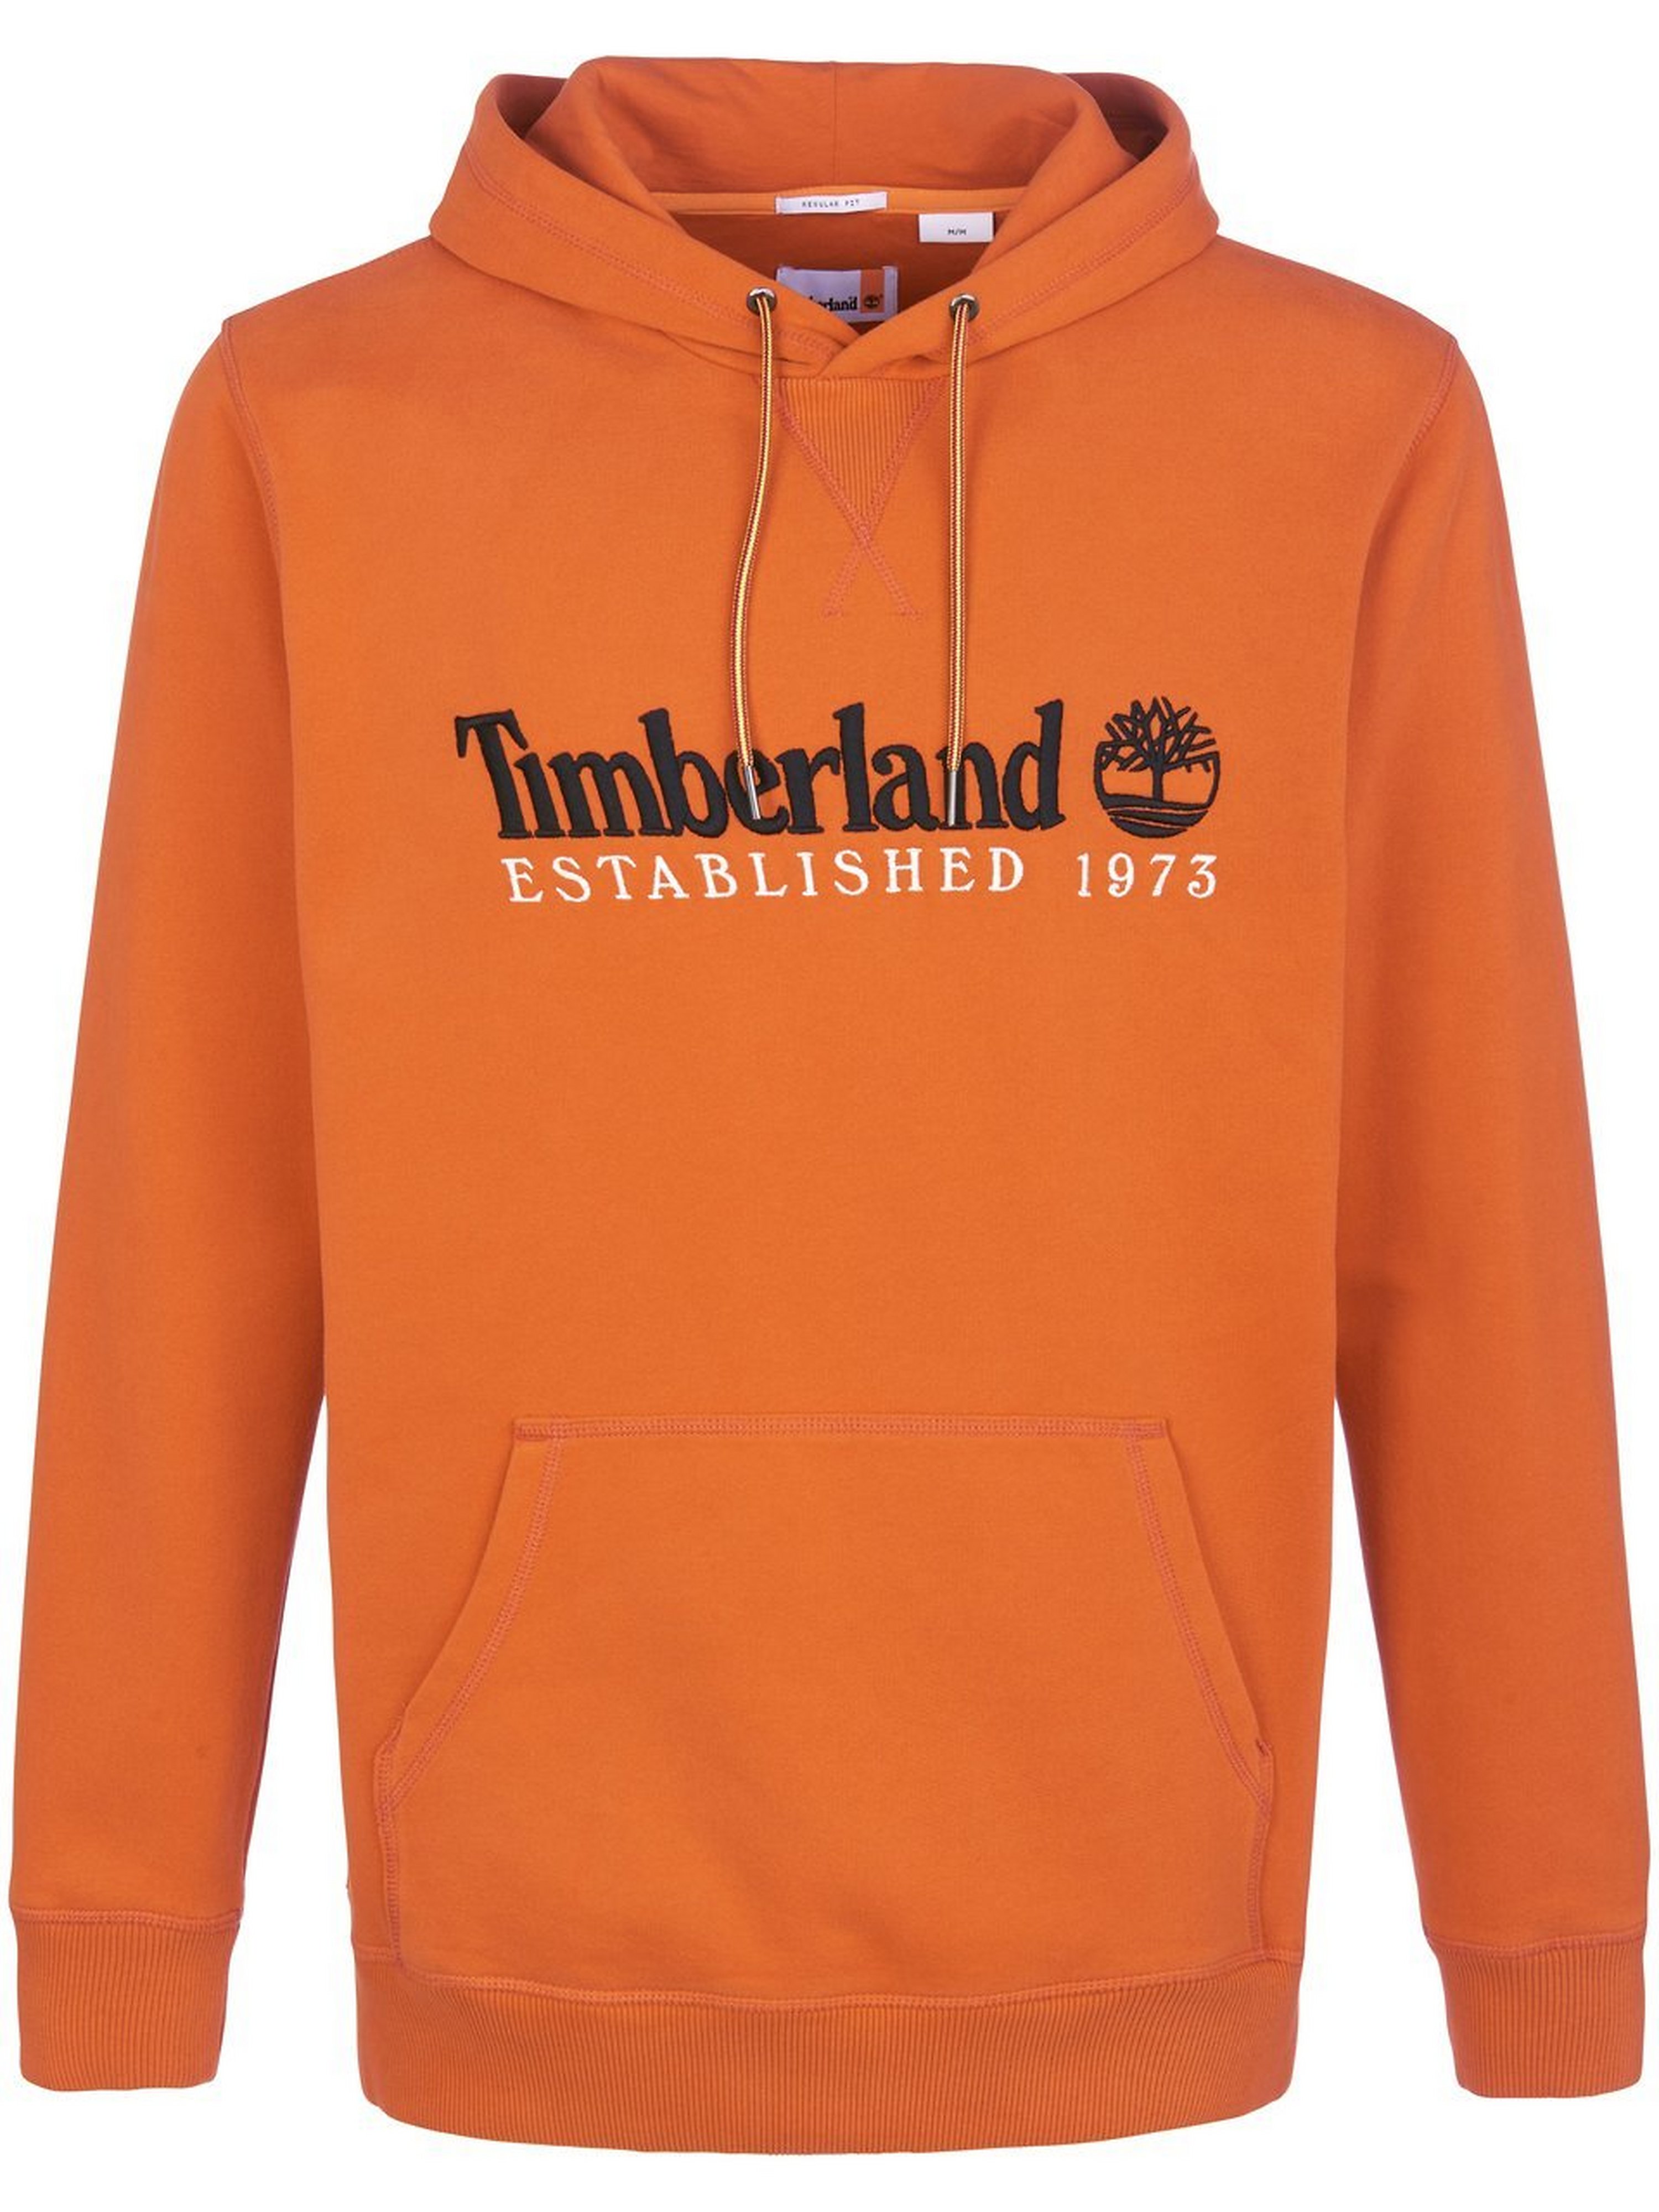 Sweatshirt Timberland orange Größe: 54